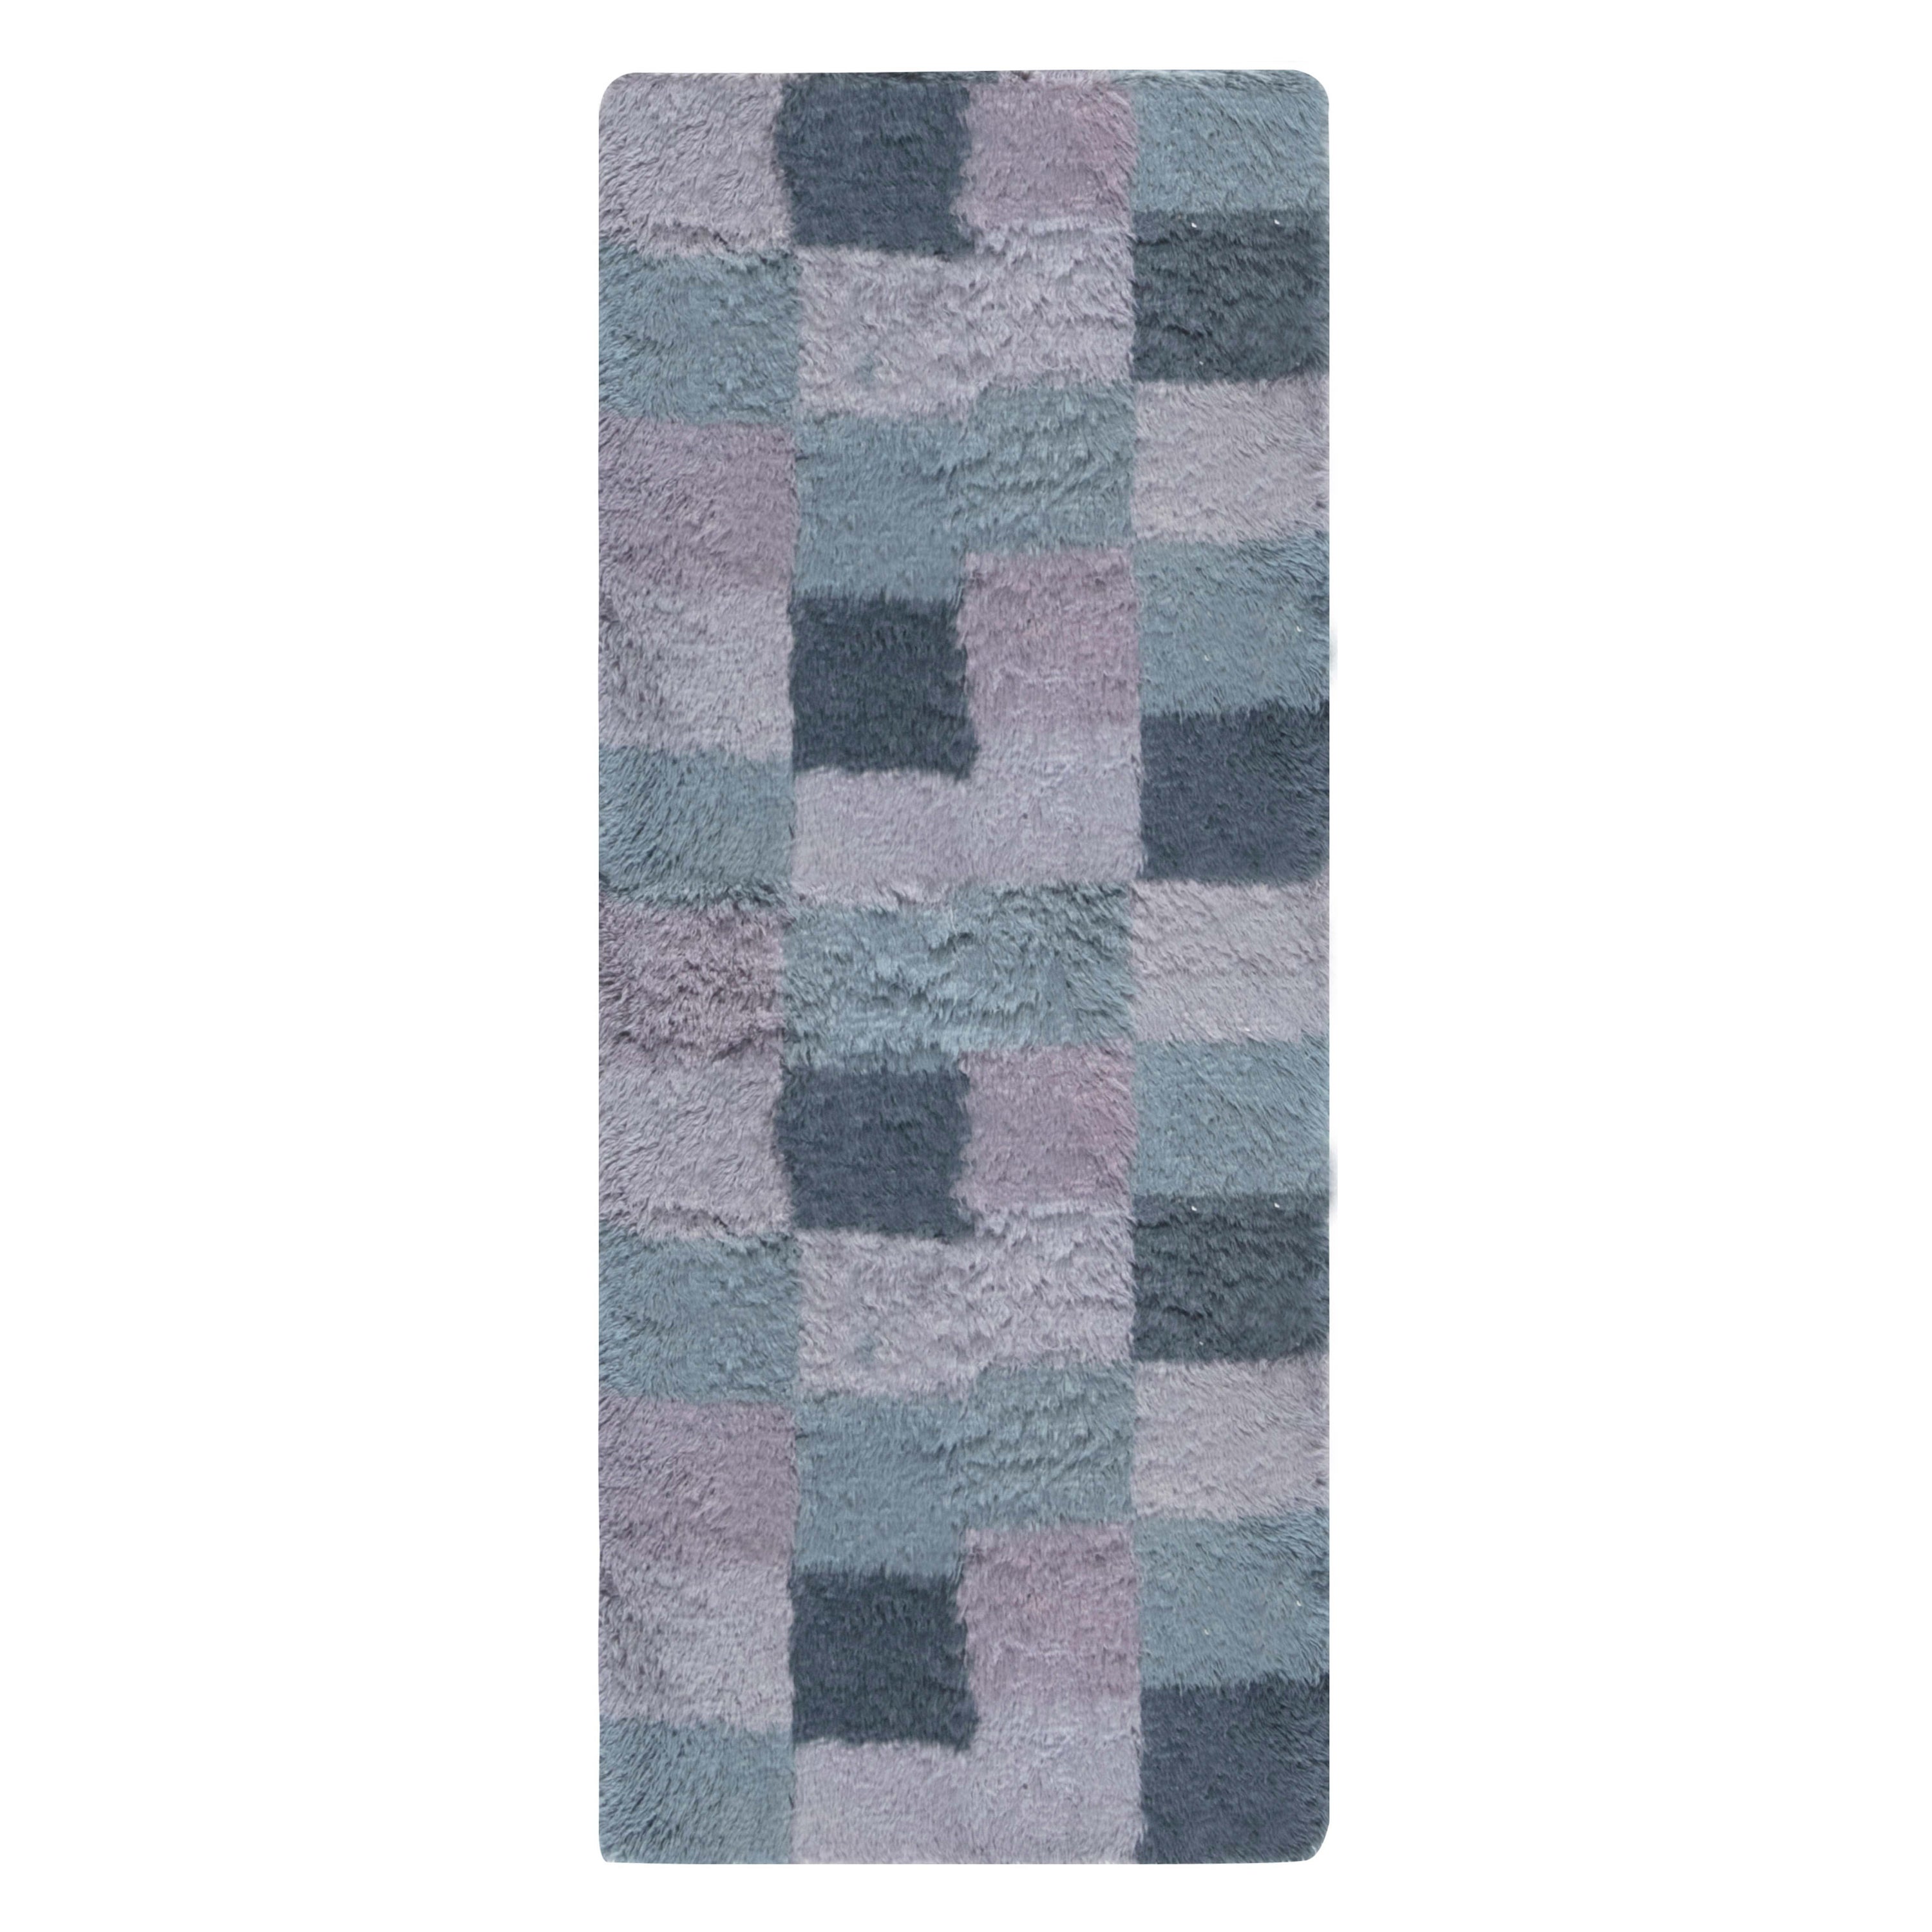 Zeitgenössischer blauer schwedischer Rya-Teppich im Rya-Design von Doris Leslie Blau